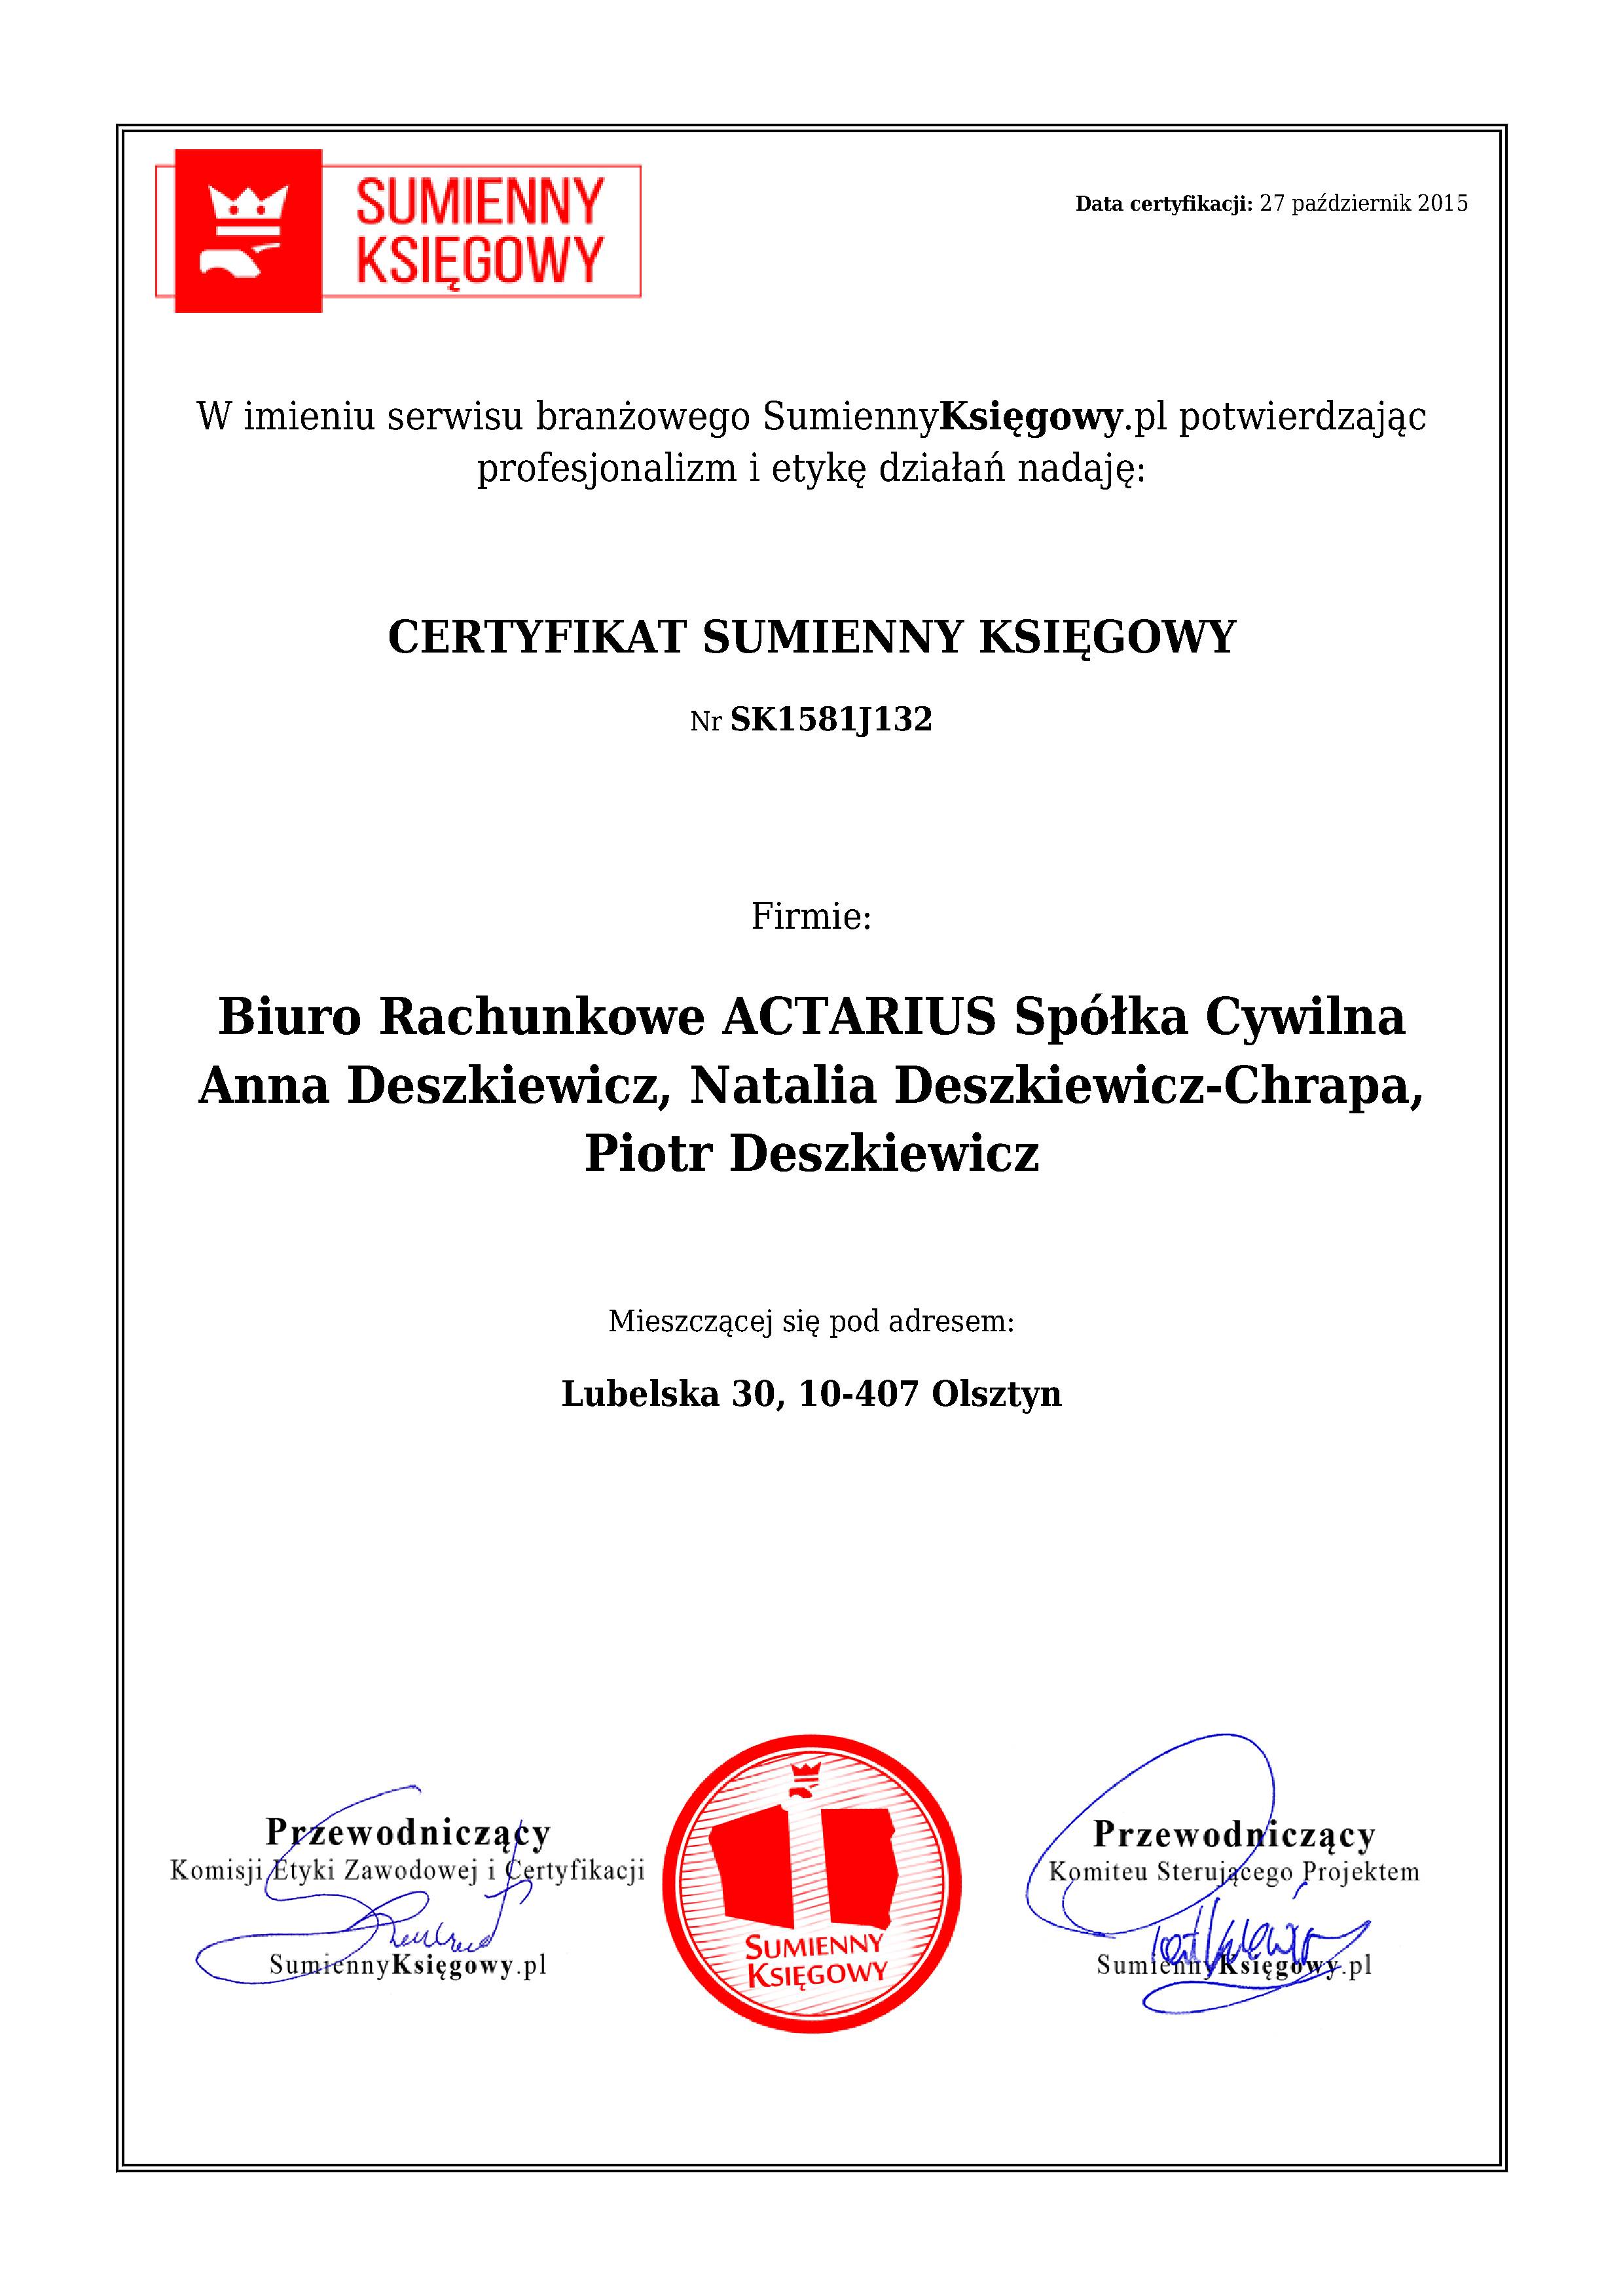 Certyfikat Biuro Rachunkowe ACTARIUS Spółka Cywilna Anna Deszkiewicz, Natalia Deszkiewicz-Chrapa, Piotr Deszkiewicz